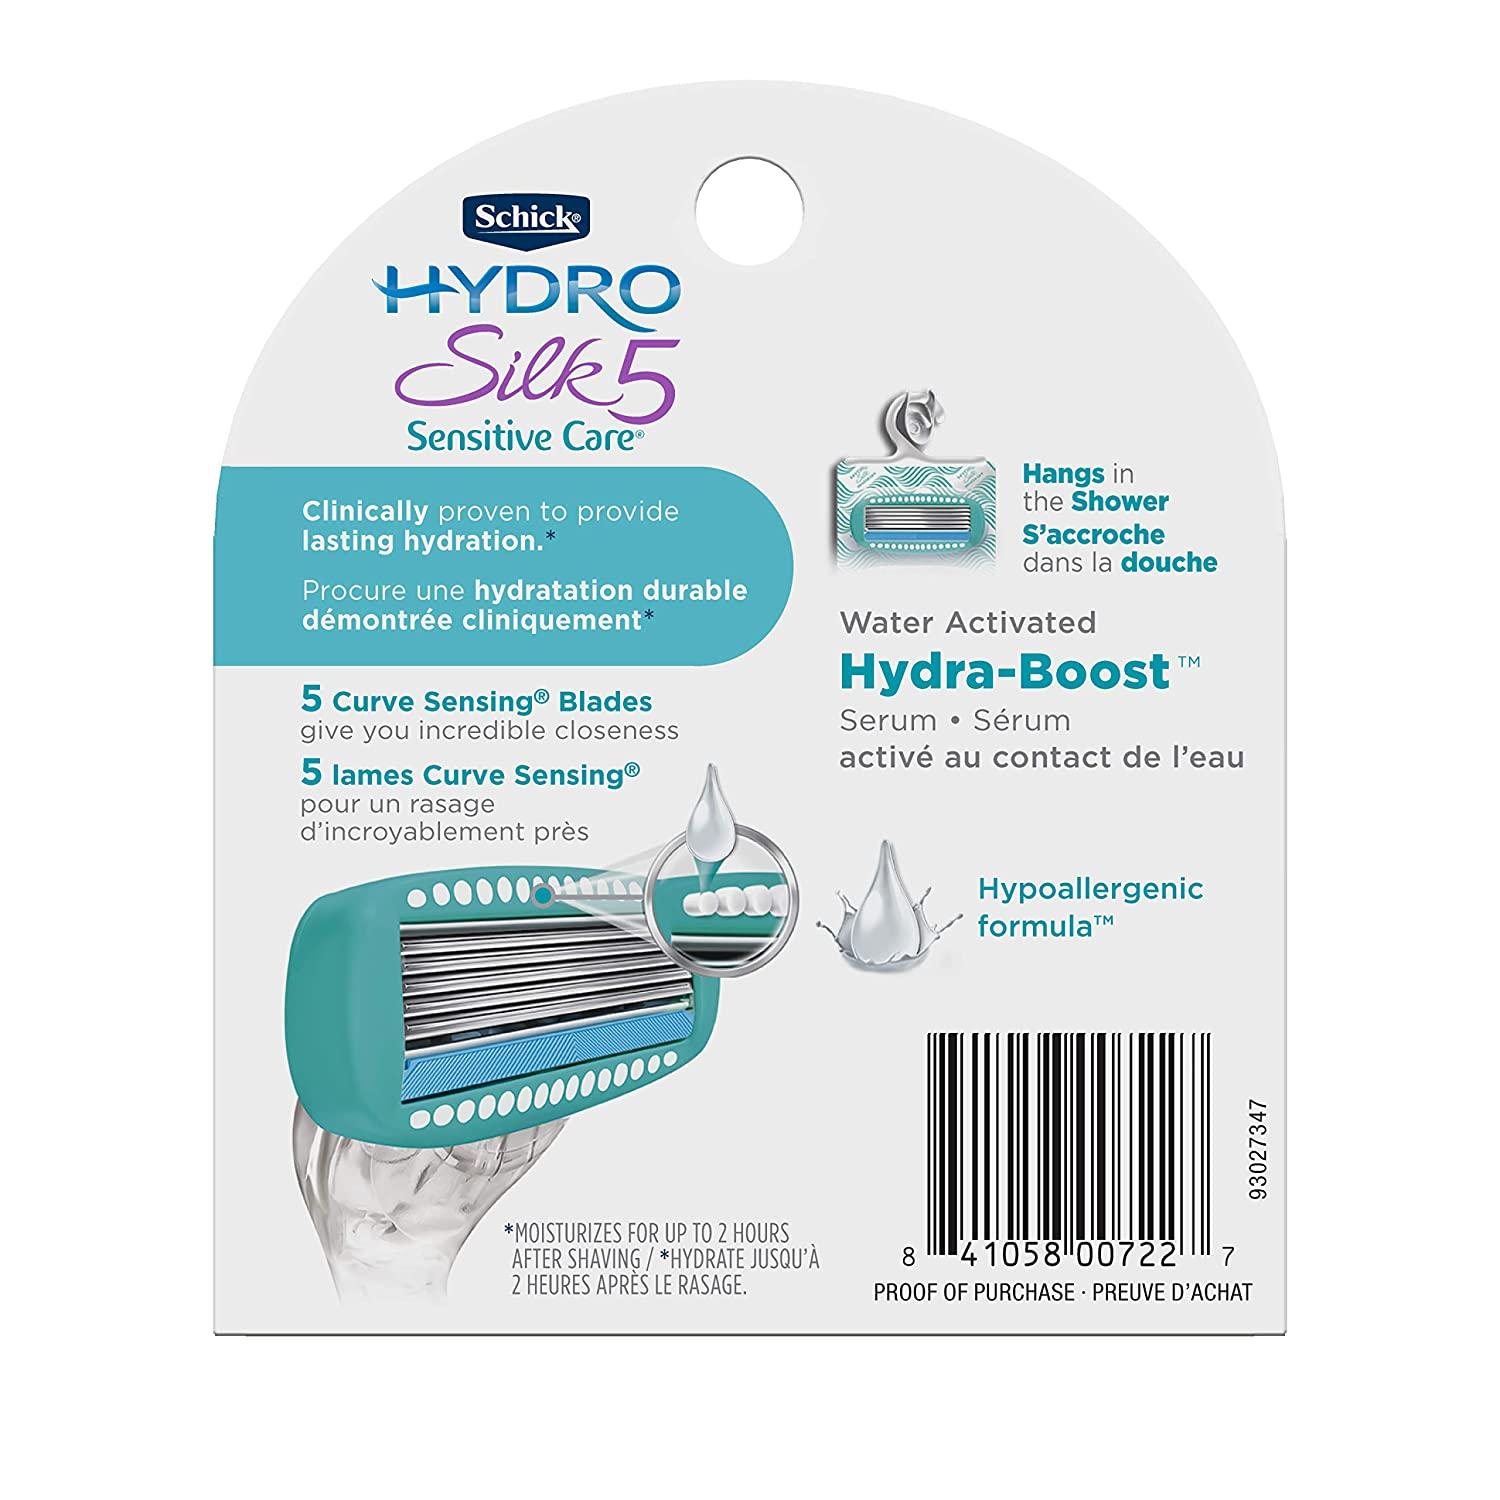 hydro silk 5 sensitive care